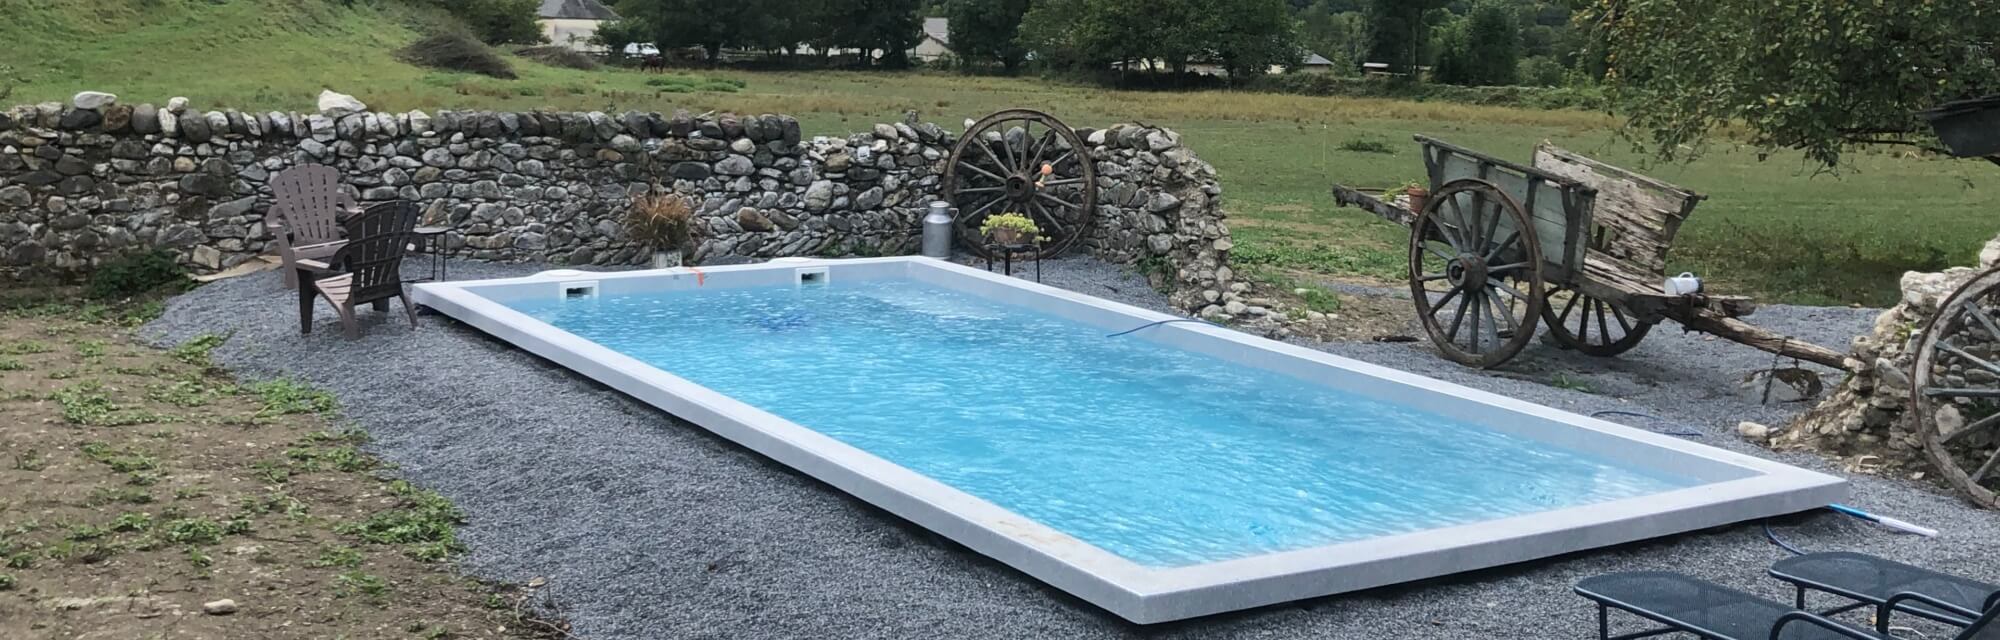 Maison d'hôtes L'Air d'Aspe avec piscine chauffée